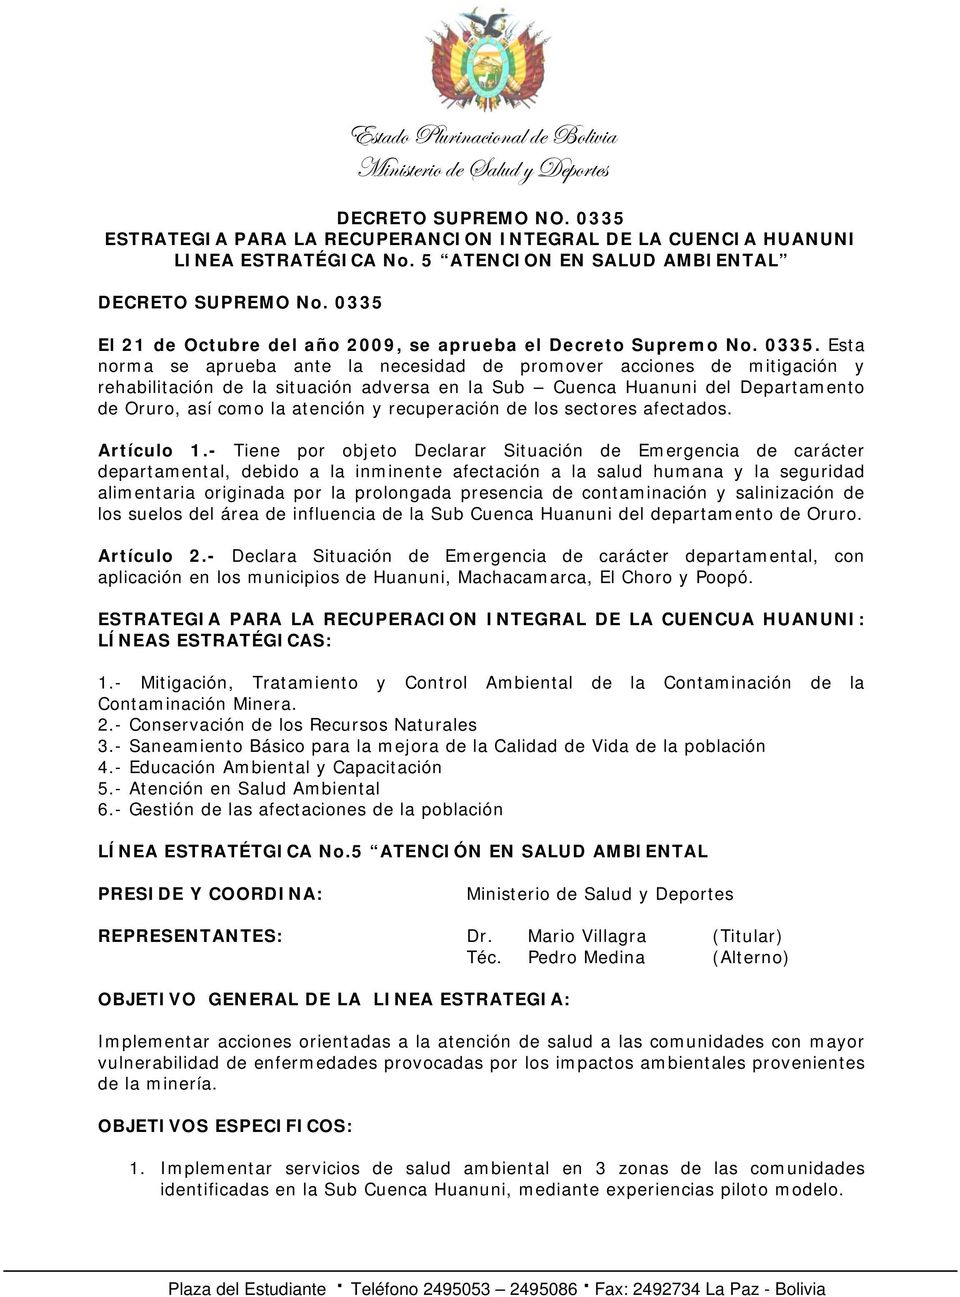 Esta norma se aprueba ante la necesidad de promover acciones de mitigación y rehabilitación de la situación adversa en la Sub Cuenca Huanuni del Departamento de Oruro, así como la atención y